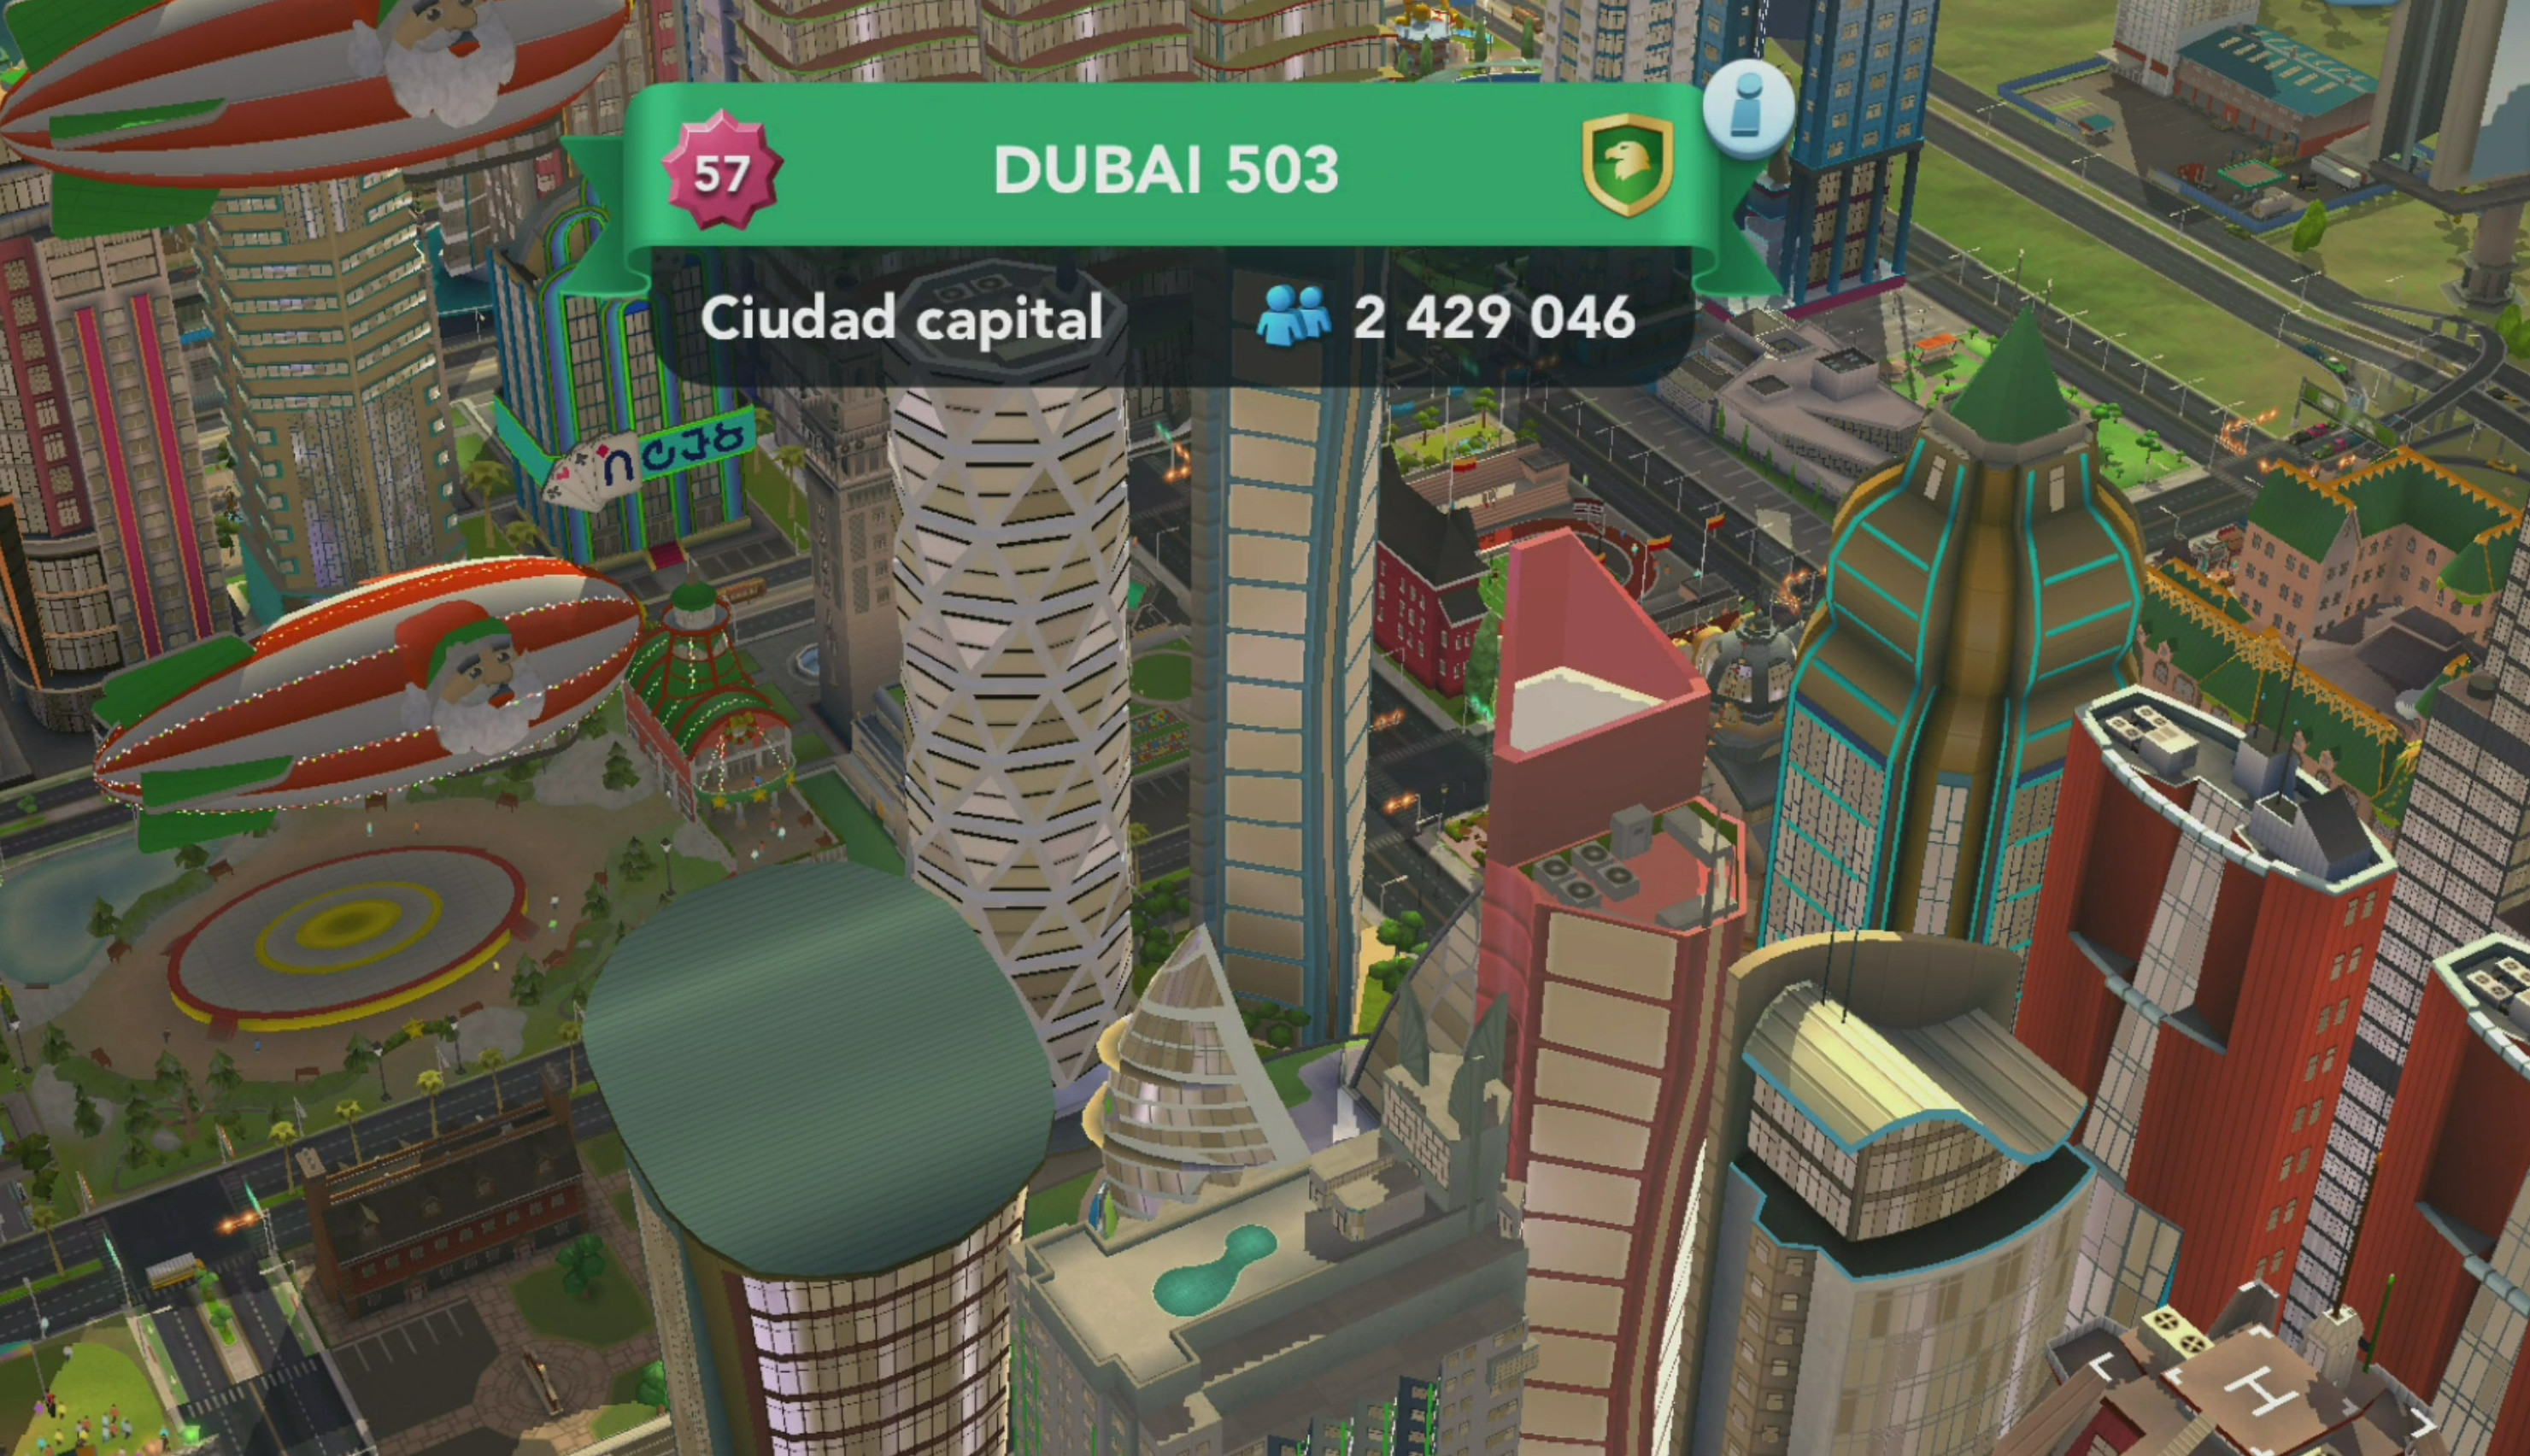 Dubai 503